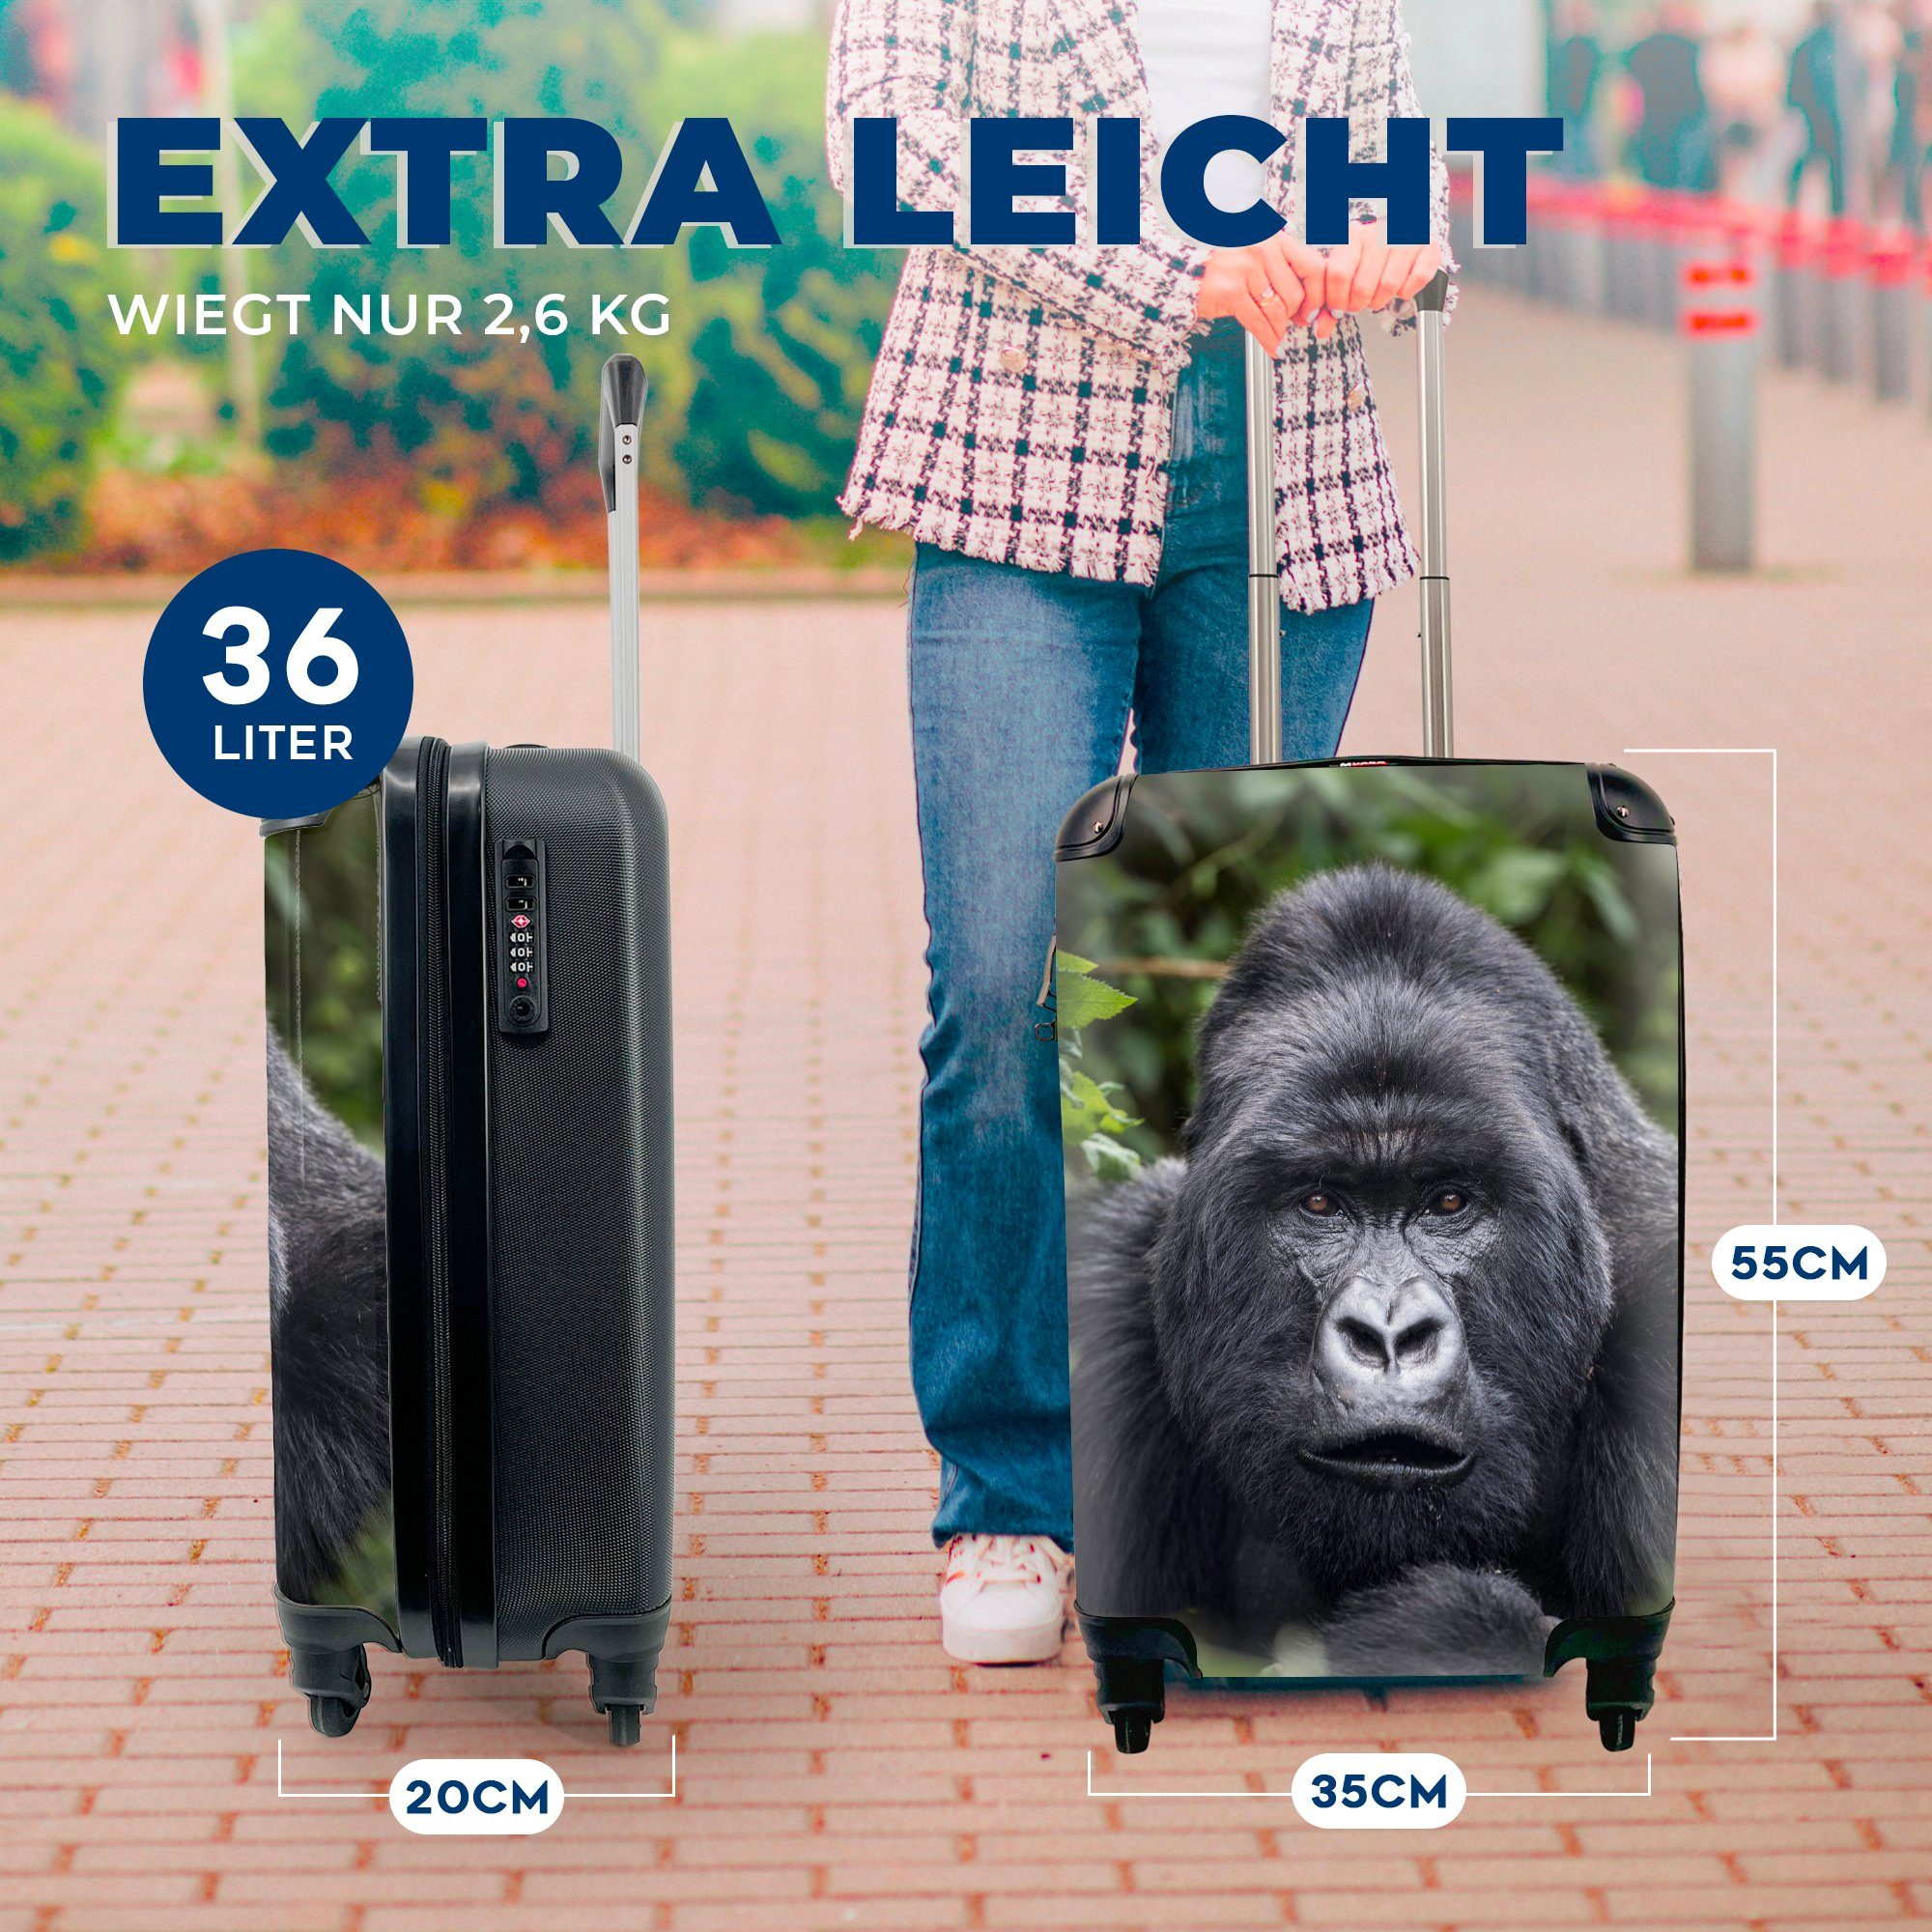 MuchoWow Handgepäckkoffer Gorilla schaut mit 4 rollen, perlweißen Kamera, Rollen, Reisekoffer Trolley, in Augen mit die für seinen Reisetasche Ferien, Handgepäck